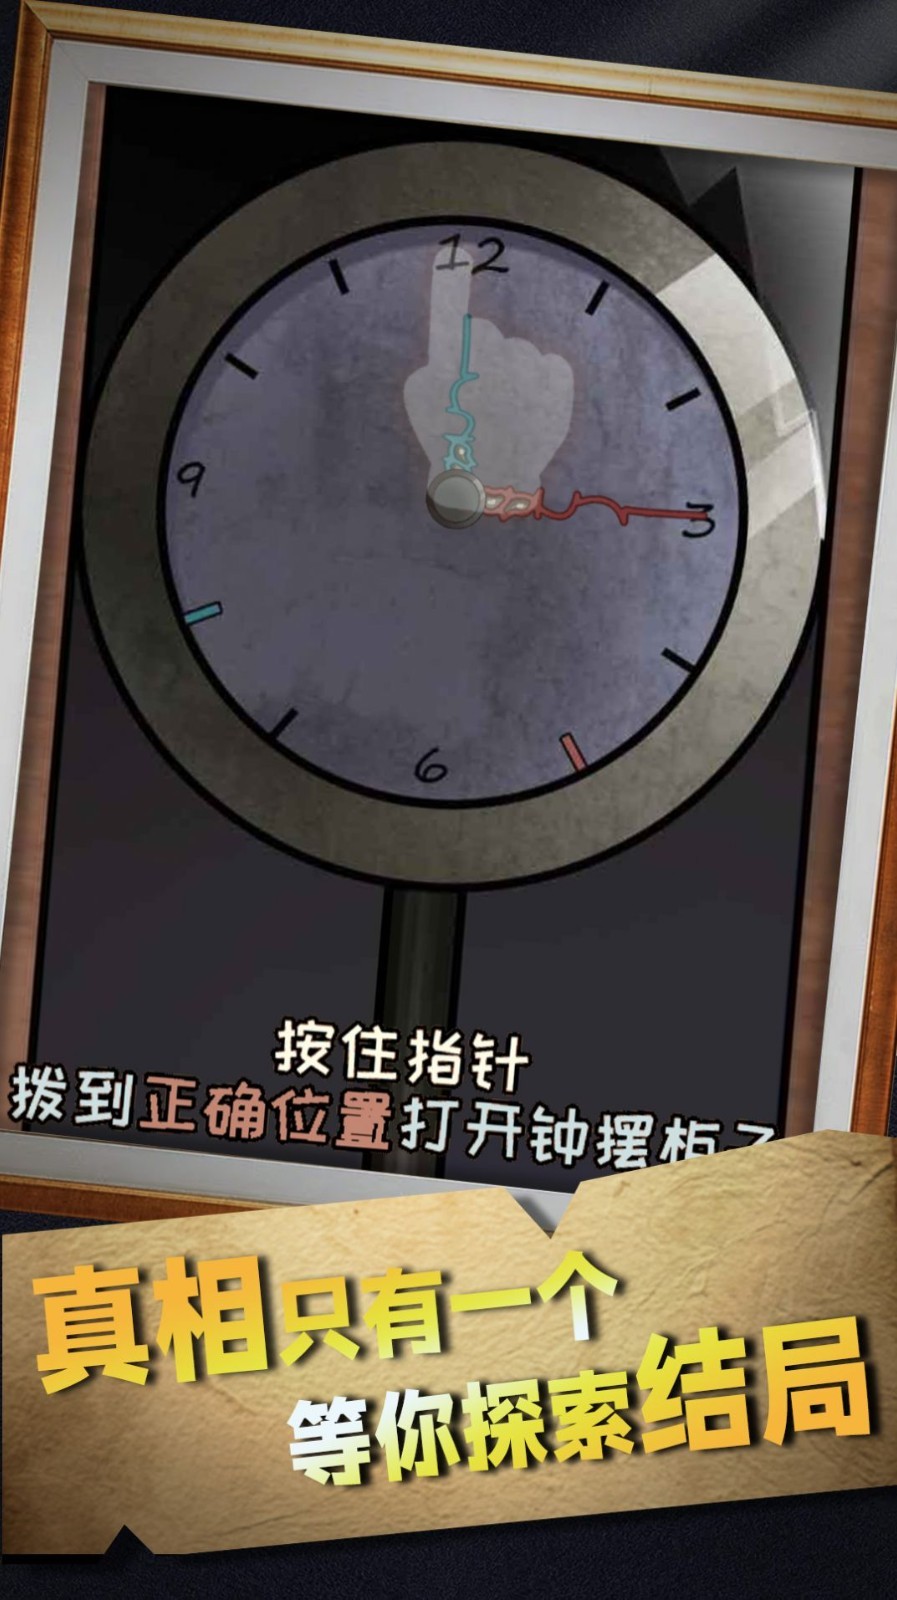 崩坏密室模拟器中文版游戏截图